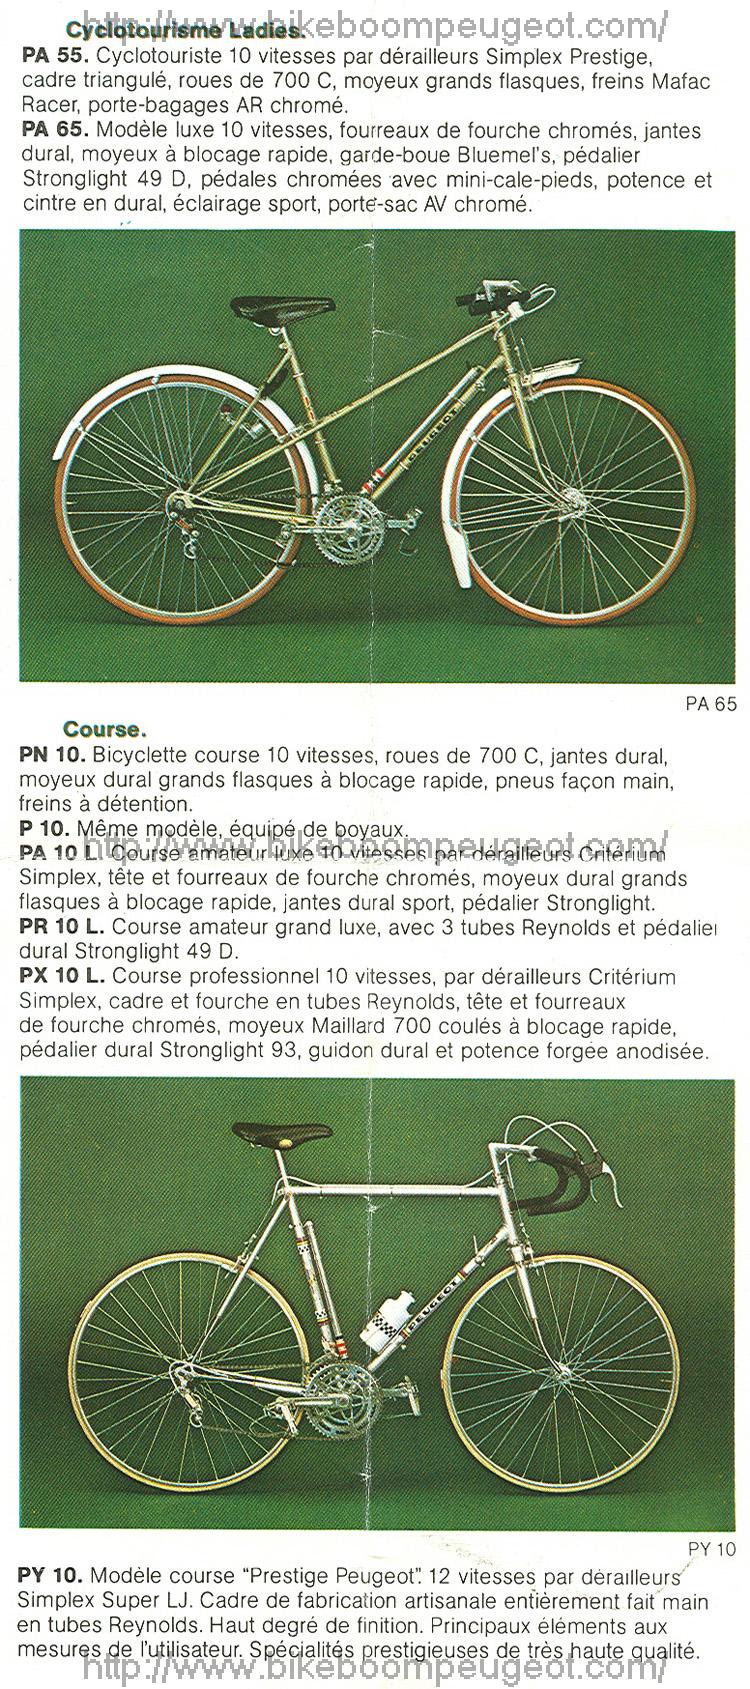 Mon premier Peugeot, PA10 1978   Peugeot_1975_Catalog_France_Cyclotourisme_Ladies_Course_BikeBoomPeugeot